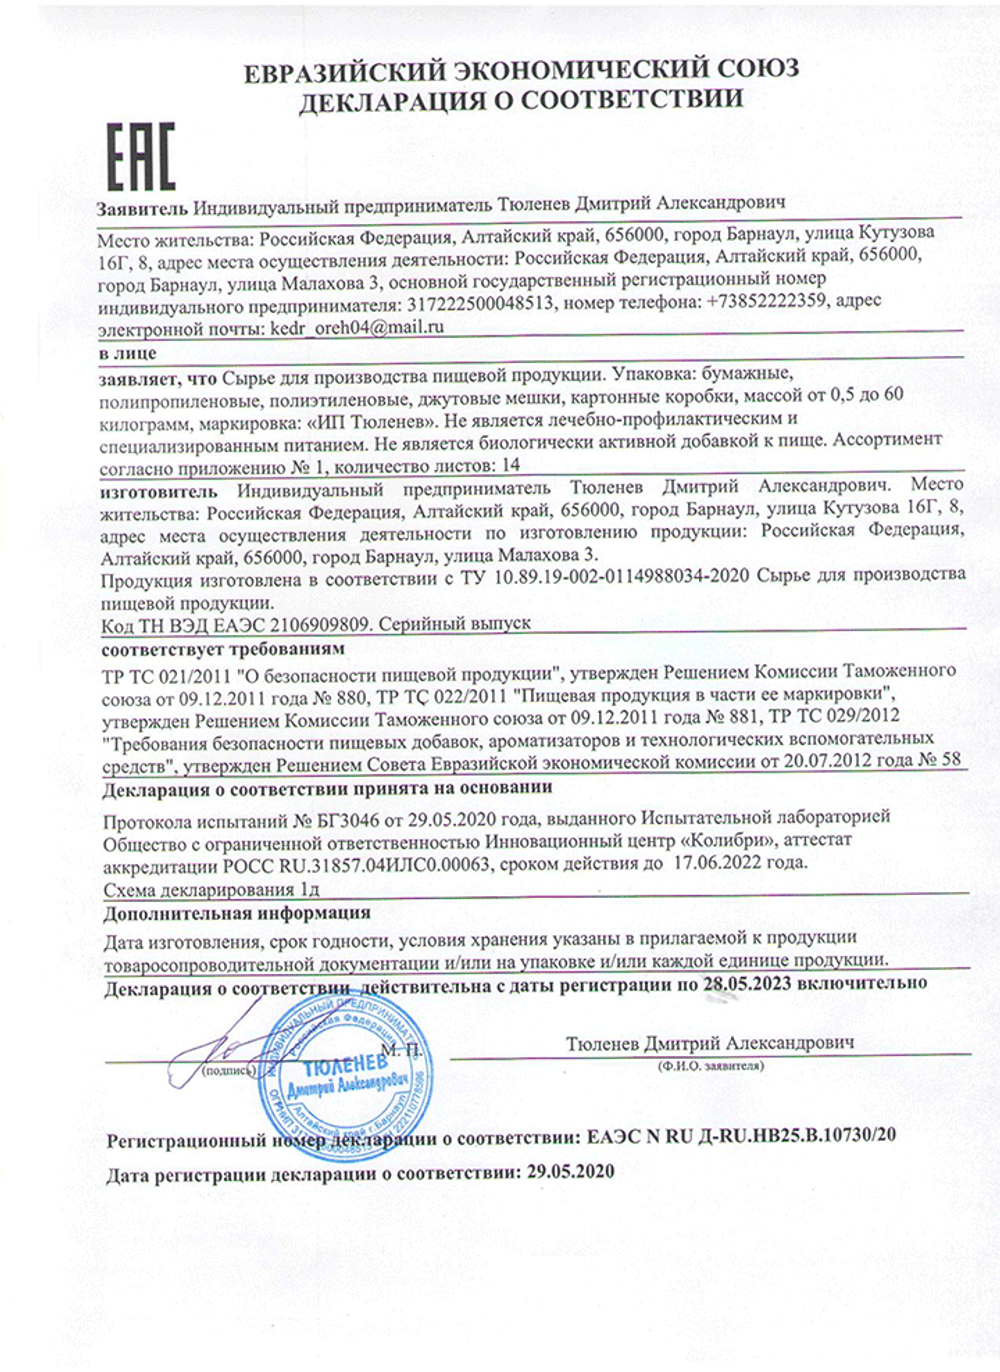 Изображение сертификата соответствия цветов василька синего-adonnis.ru